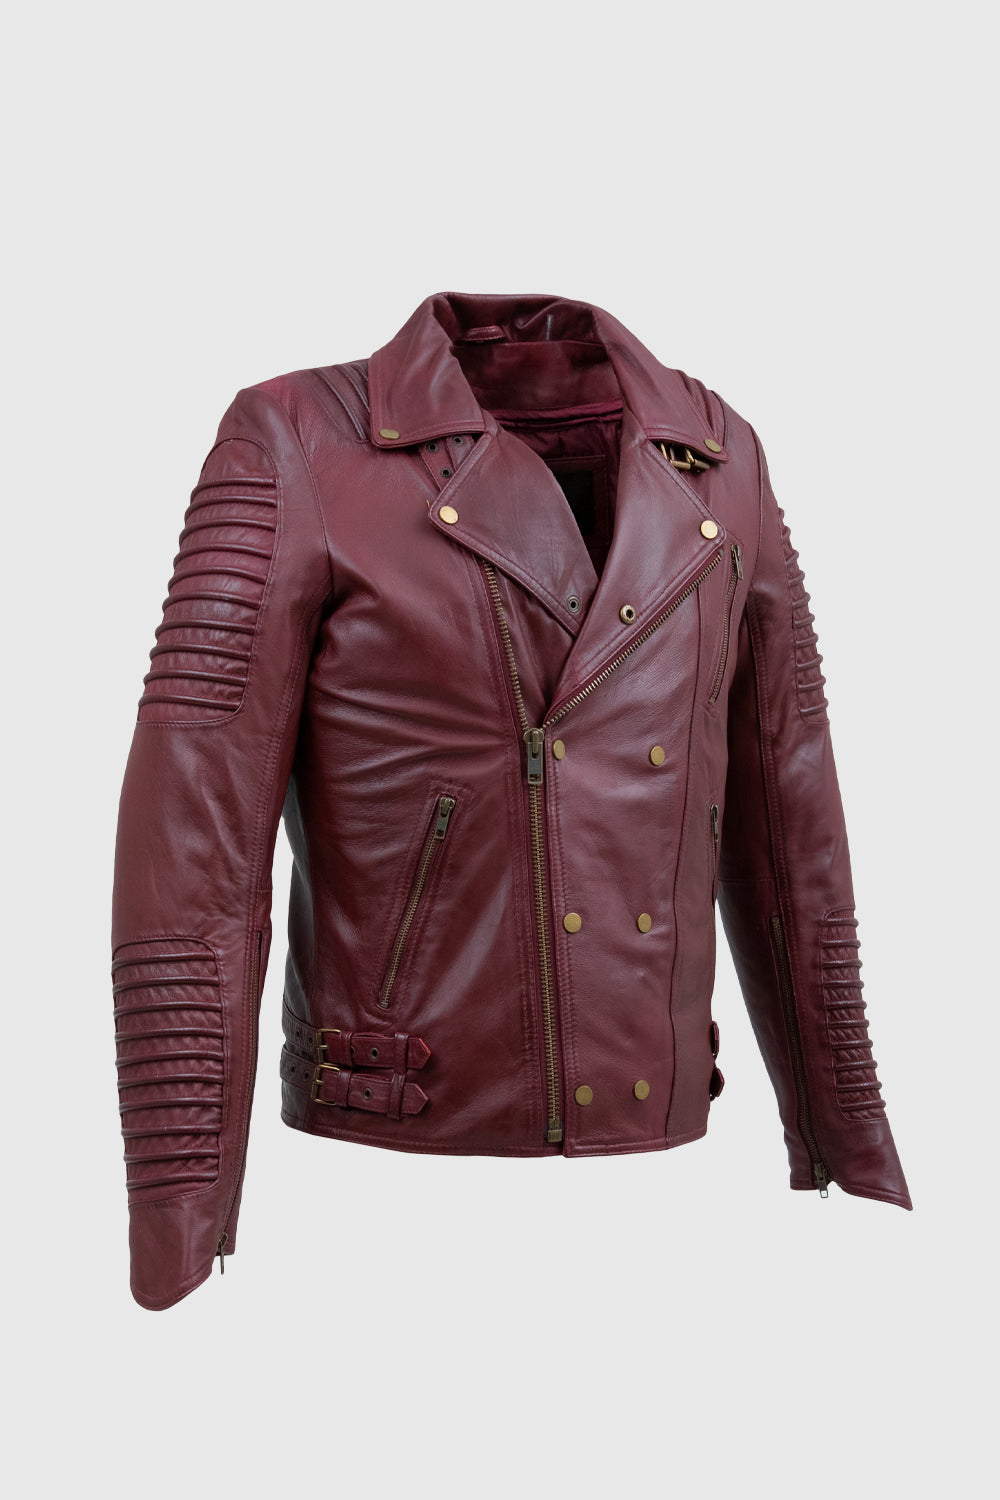 Brooklyn Mens Lambskin Leather Jacket Oxblood Men's Motorcycle style Jacket Whet Blu NYC   